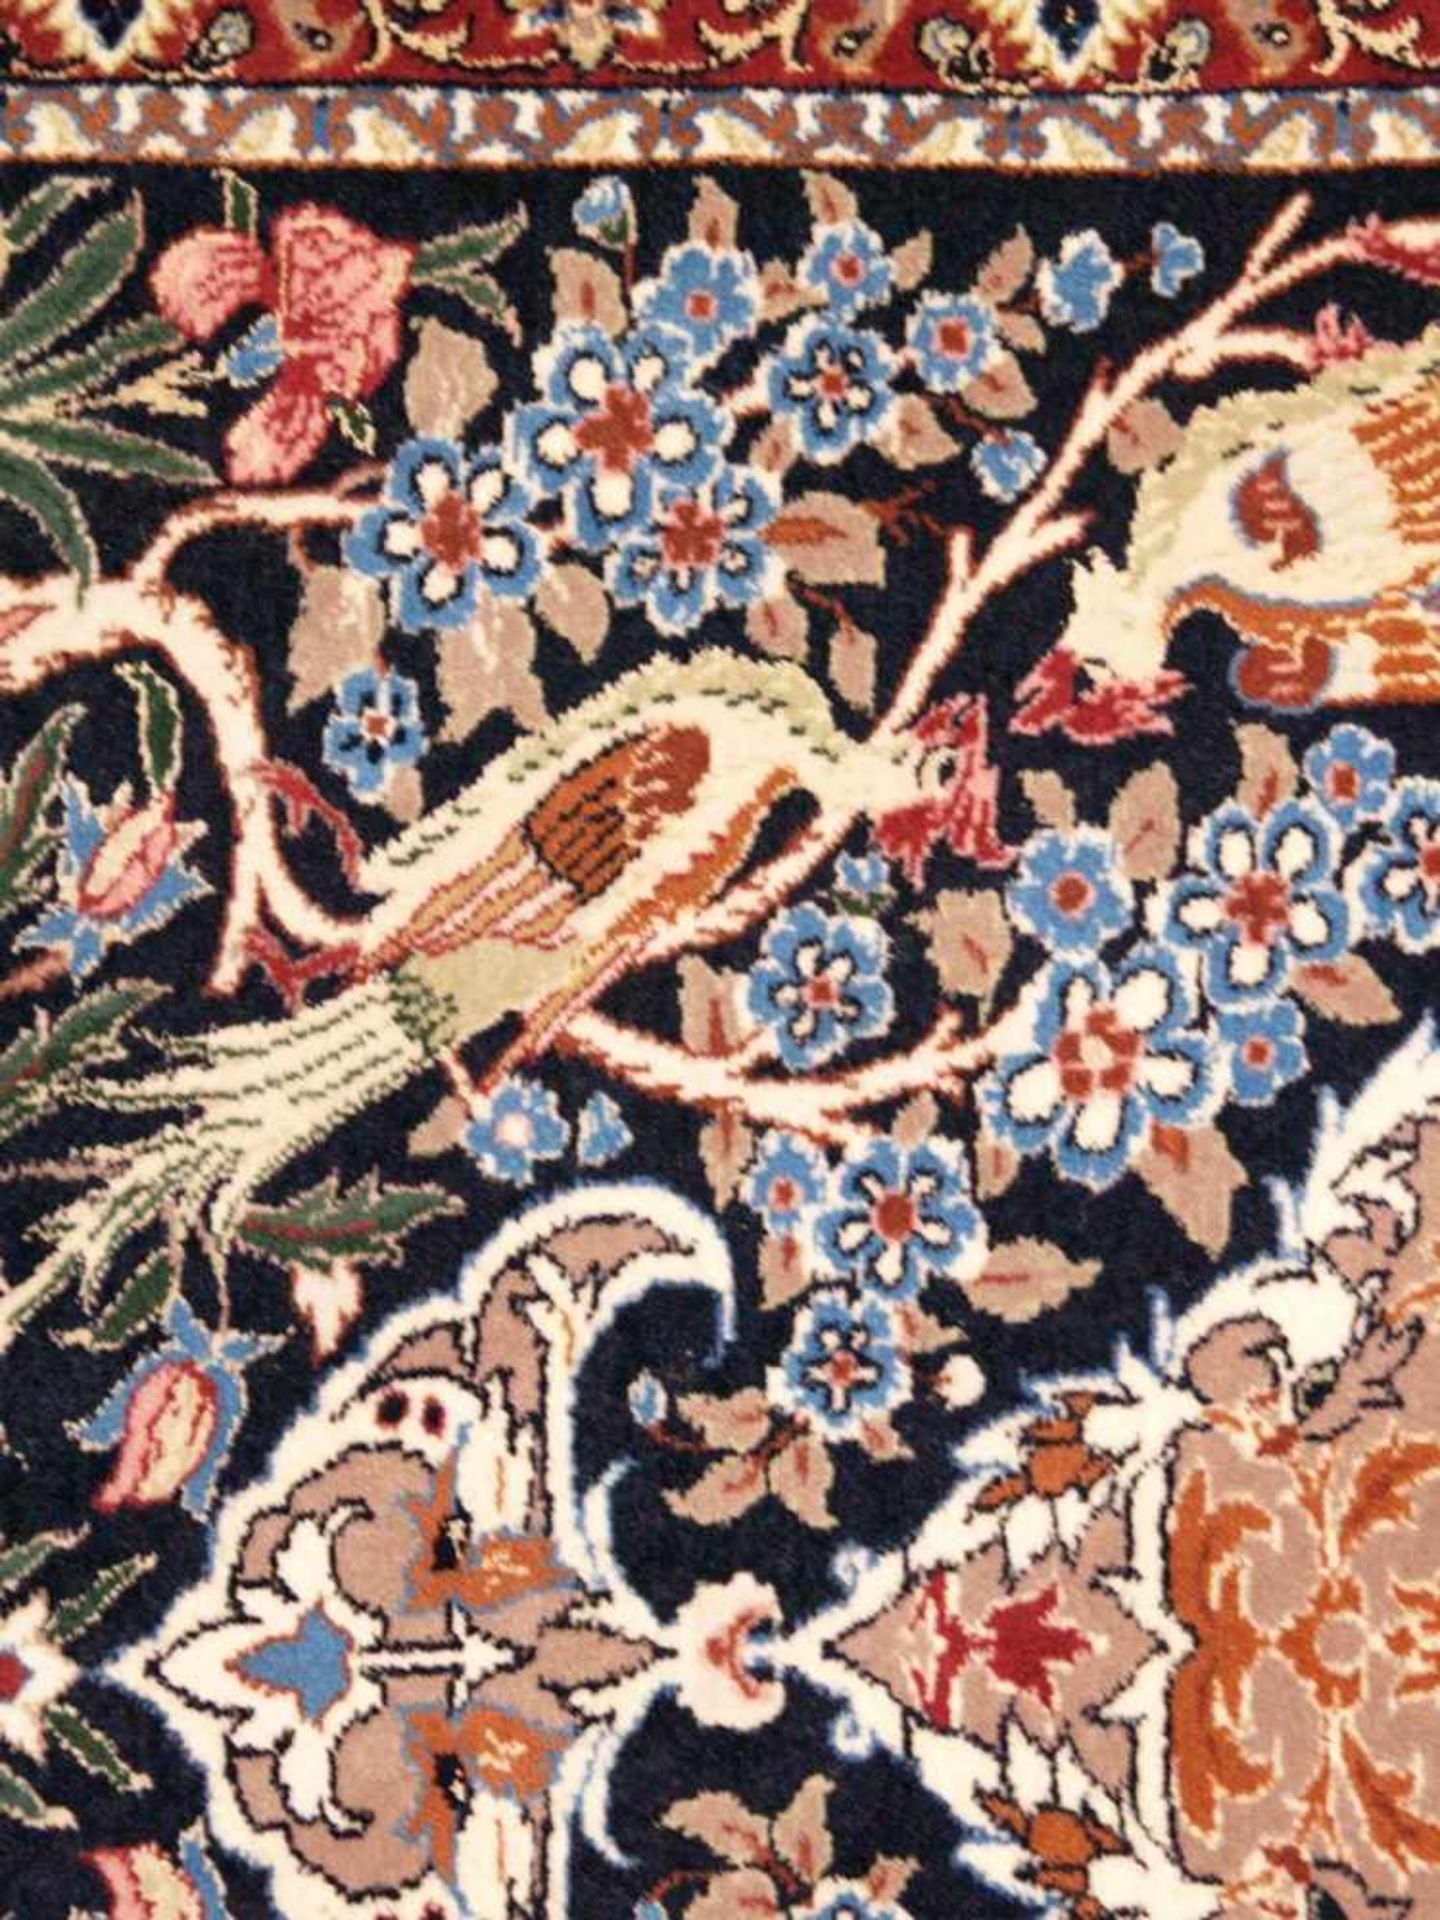 Orientteppich - Wolle und Seide, blaugrundig, zentrale florale Kartusche, gerahmt von Vögeln, - Bild 10 aus 11